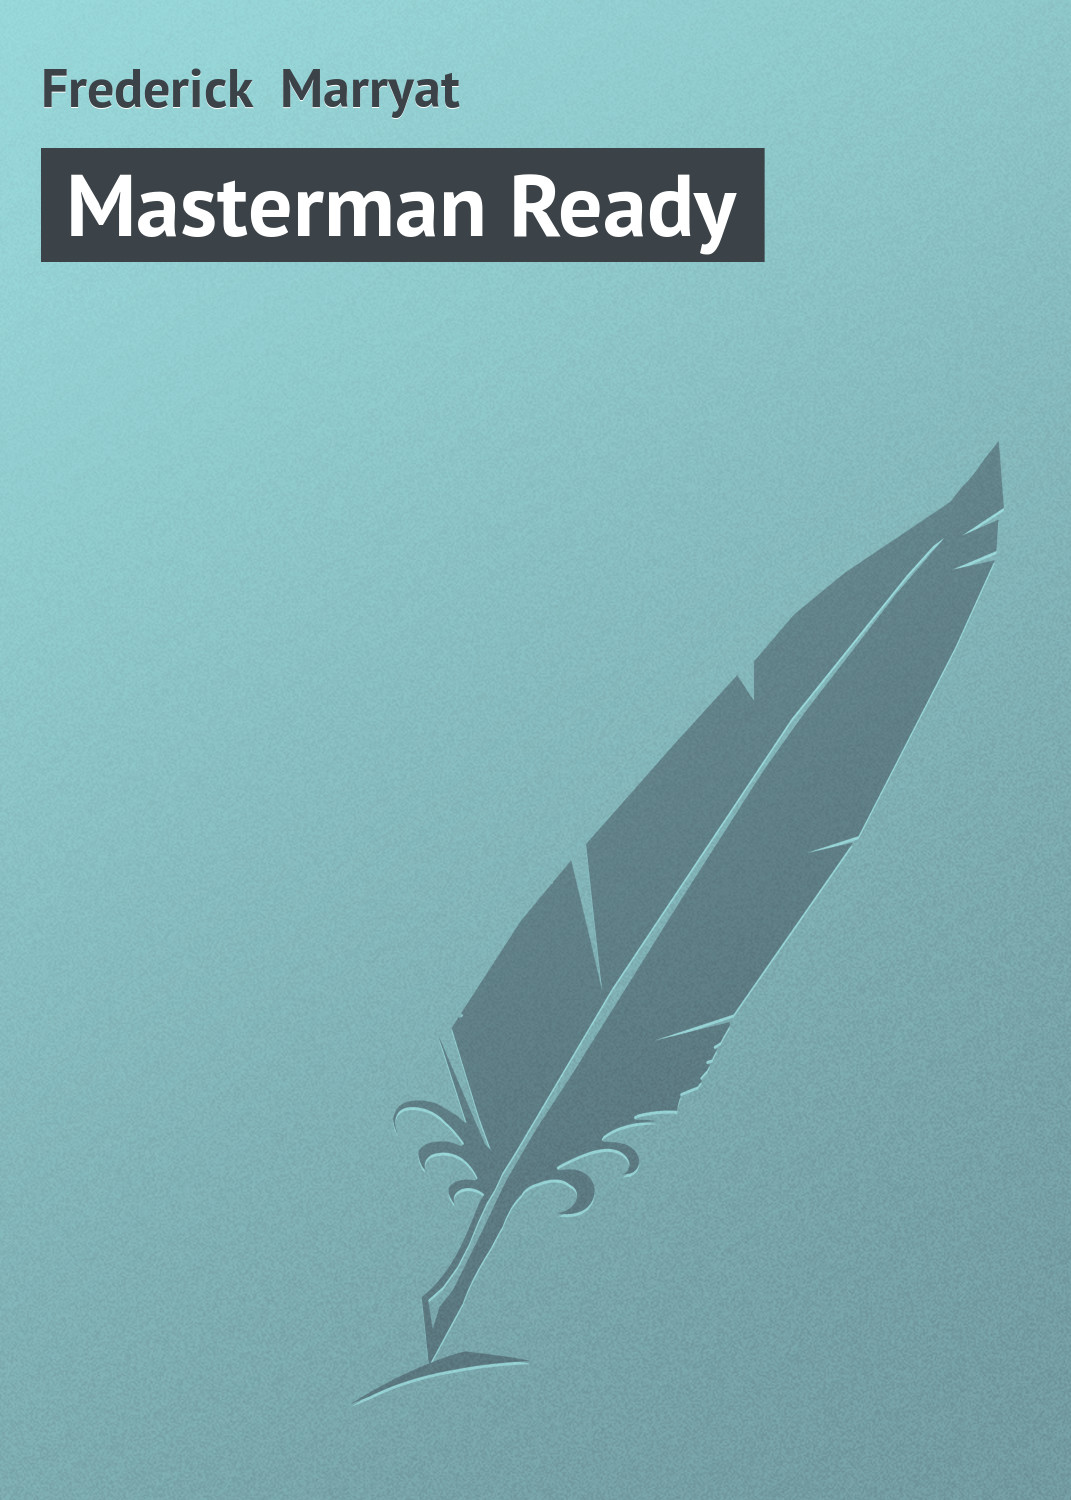 Книга Masterman Ready из серии , созданная Frederick Marryat, может относится к жанру Зарубежная старинная литература, Зарубежная классика. Стоимость электронной книги Masterman Ready с идентификатором 21103438 составляет 5.99 руб.